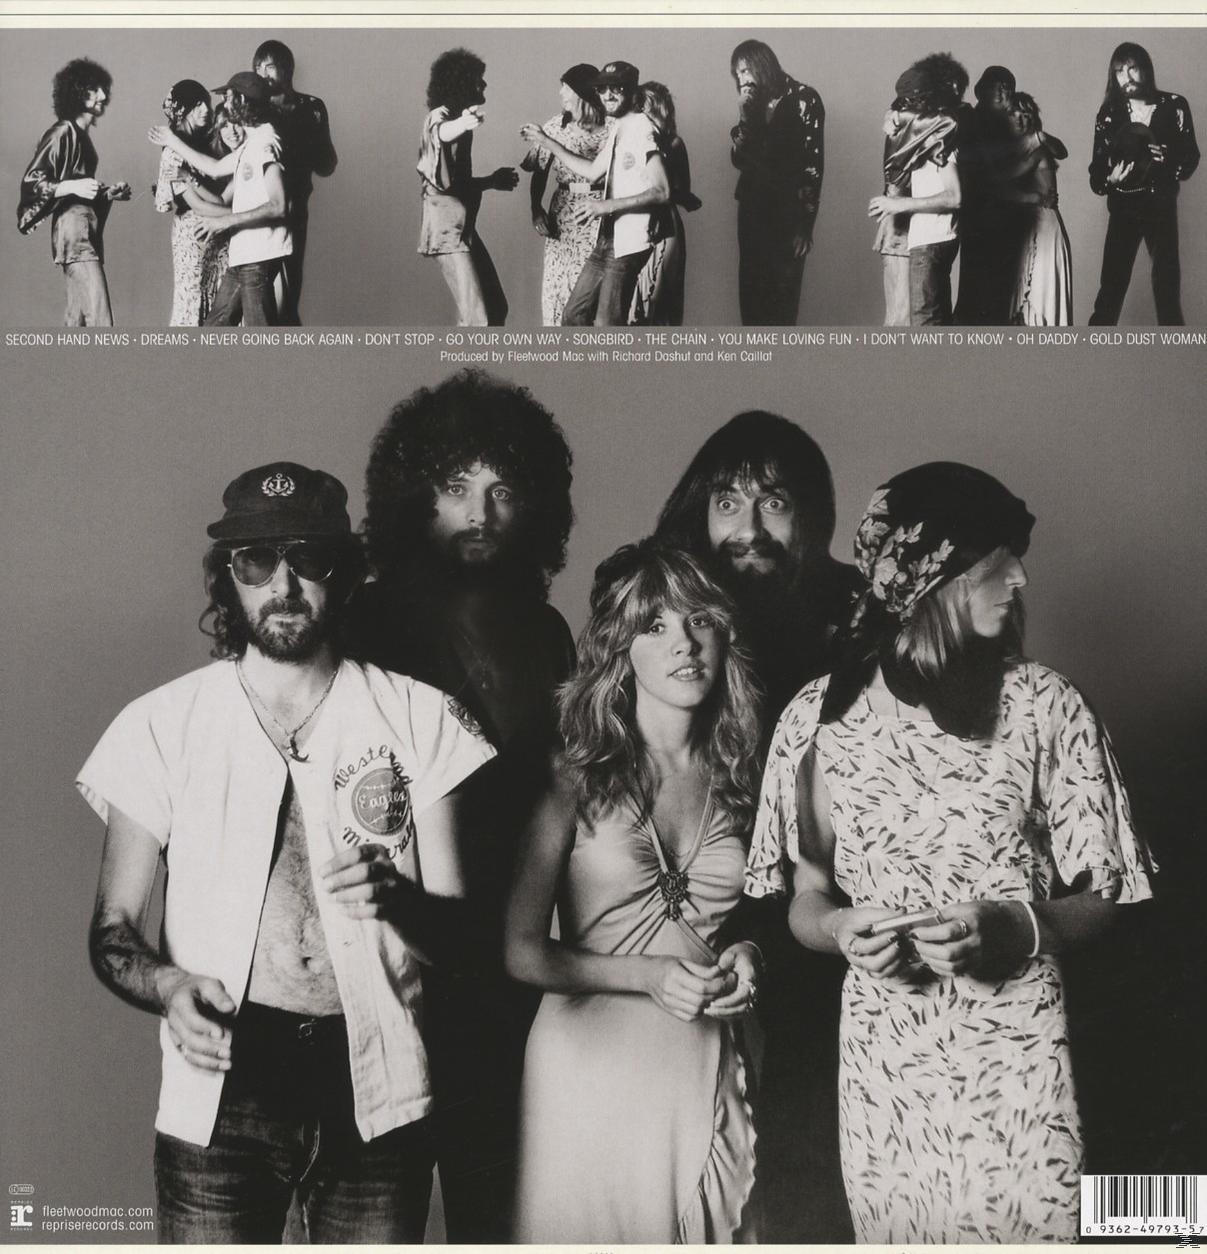 Fleetwood Rumours (Vinyl) - - Mac